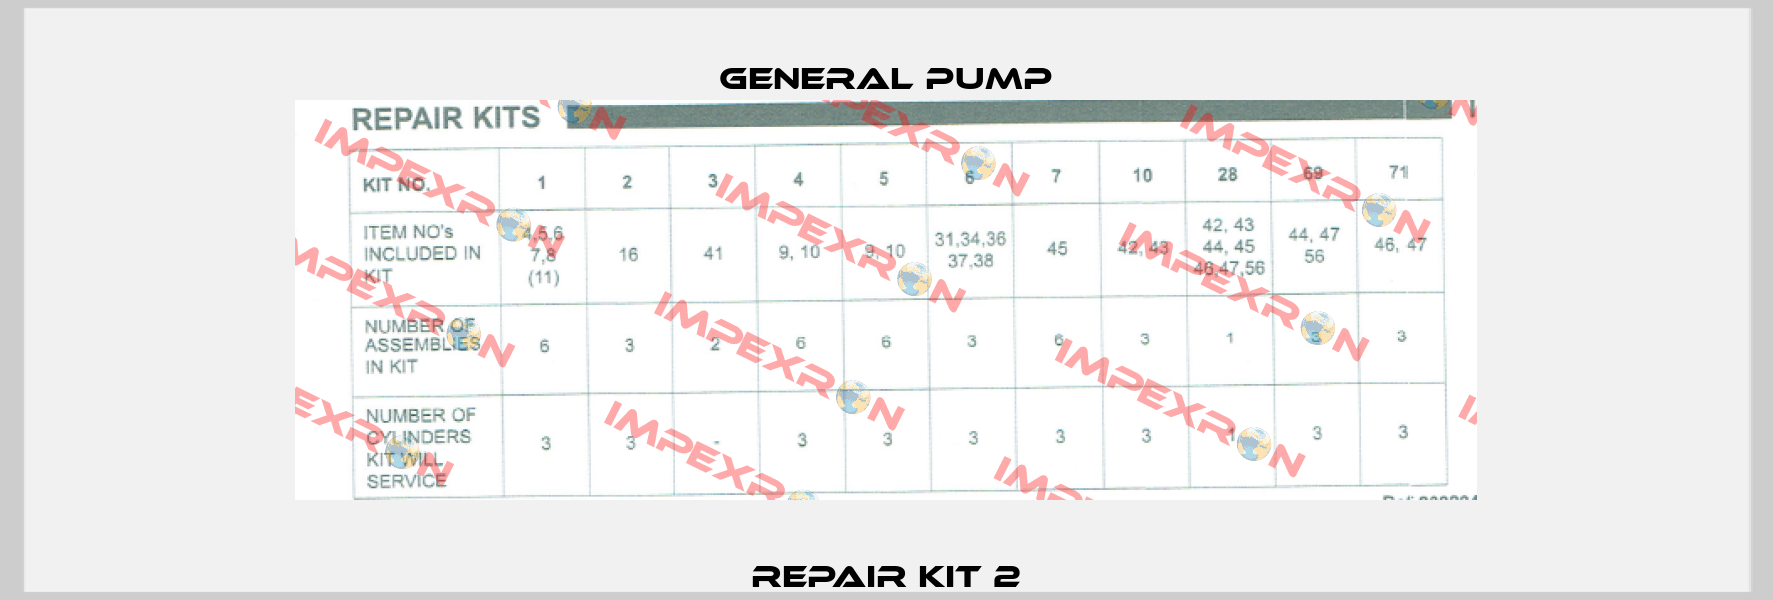 Repair Kit 2 General Pump